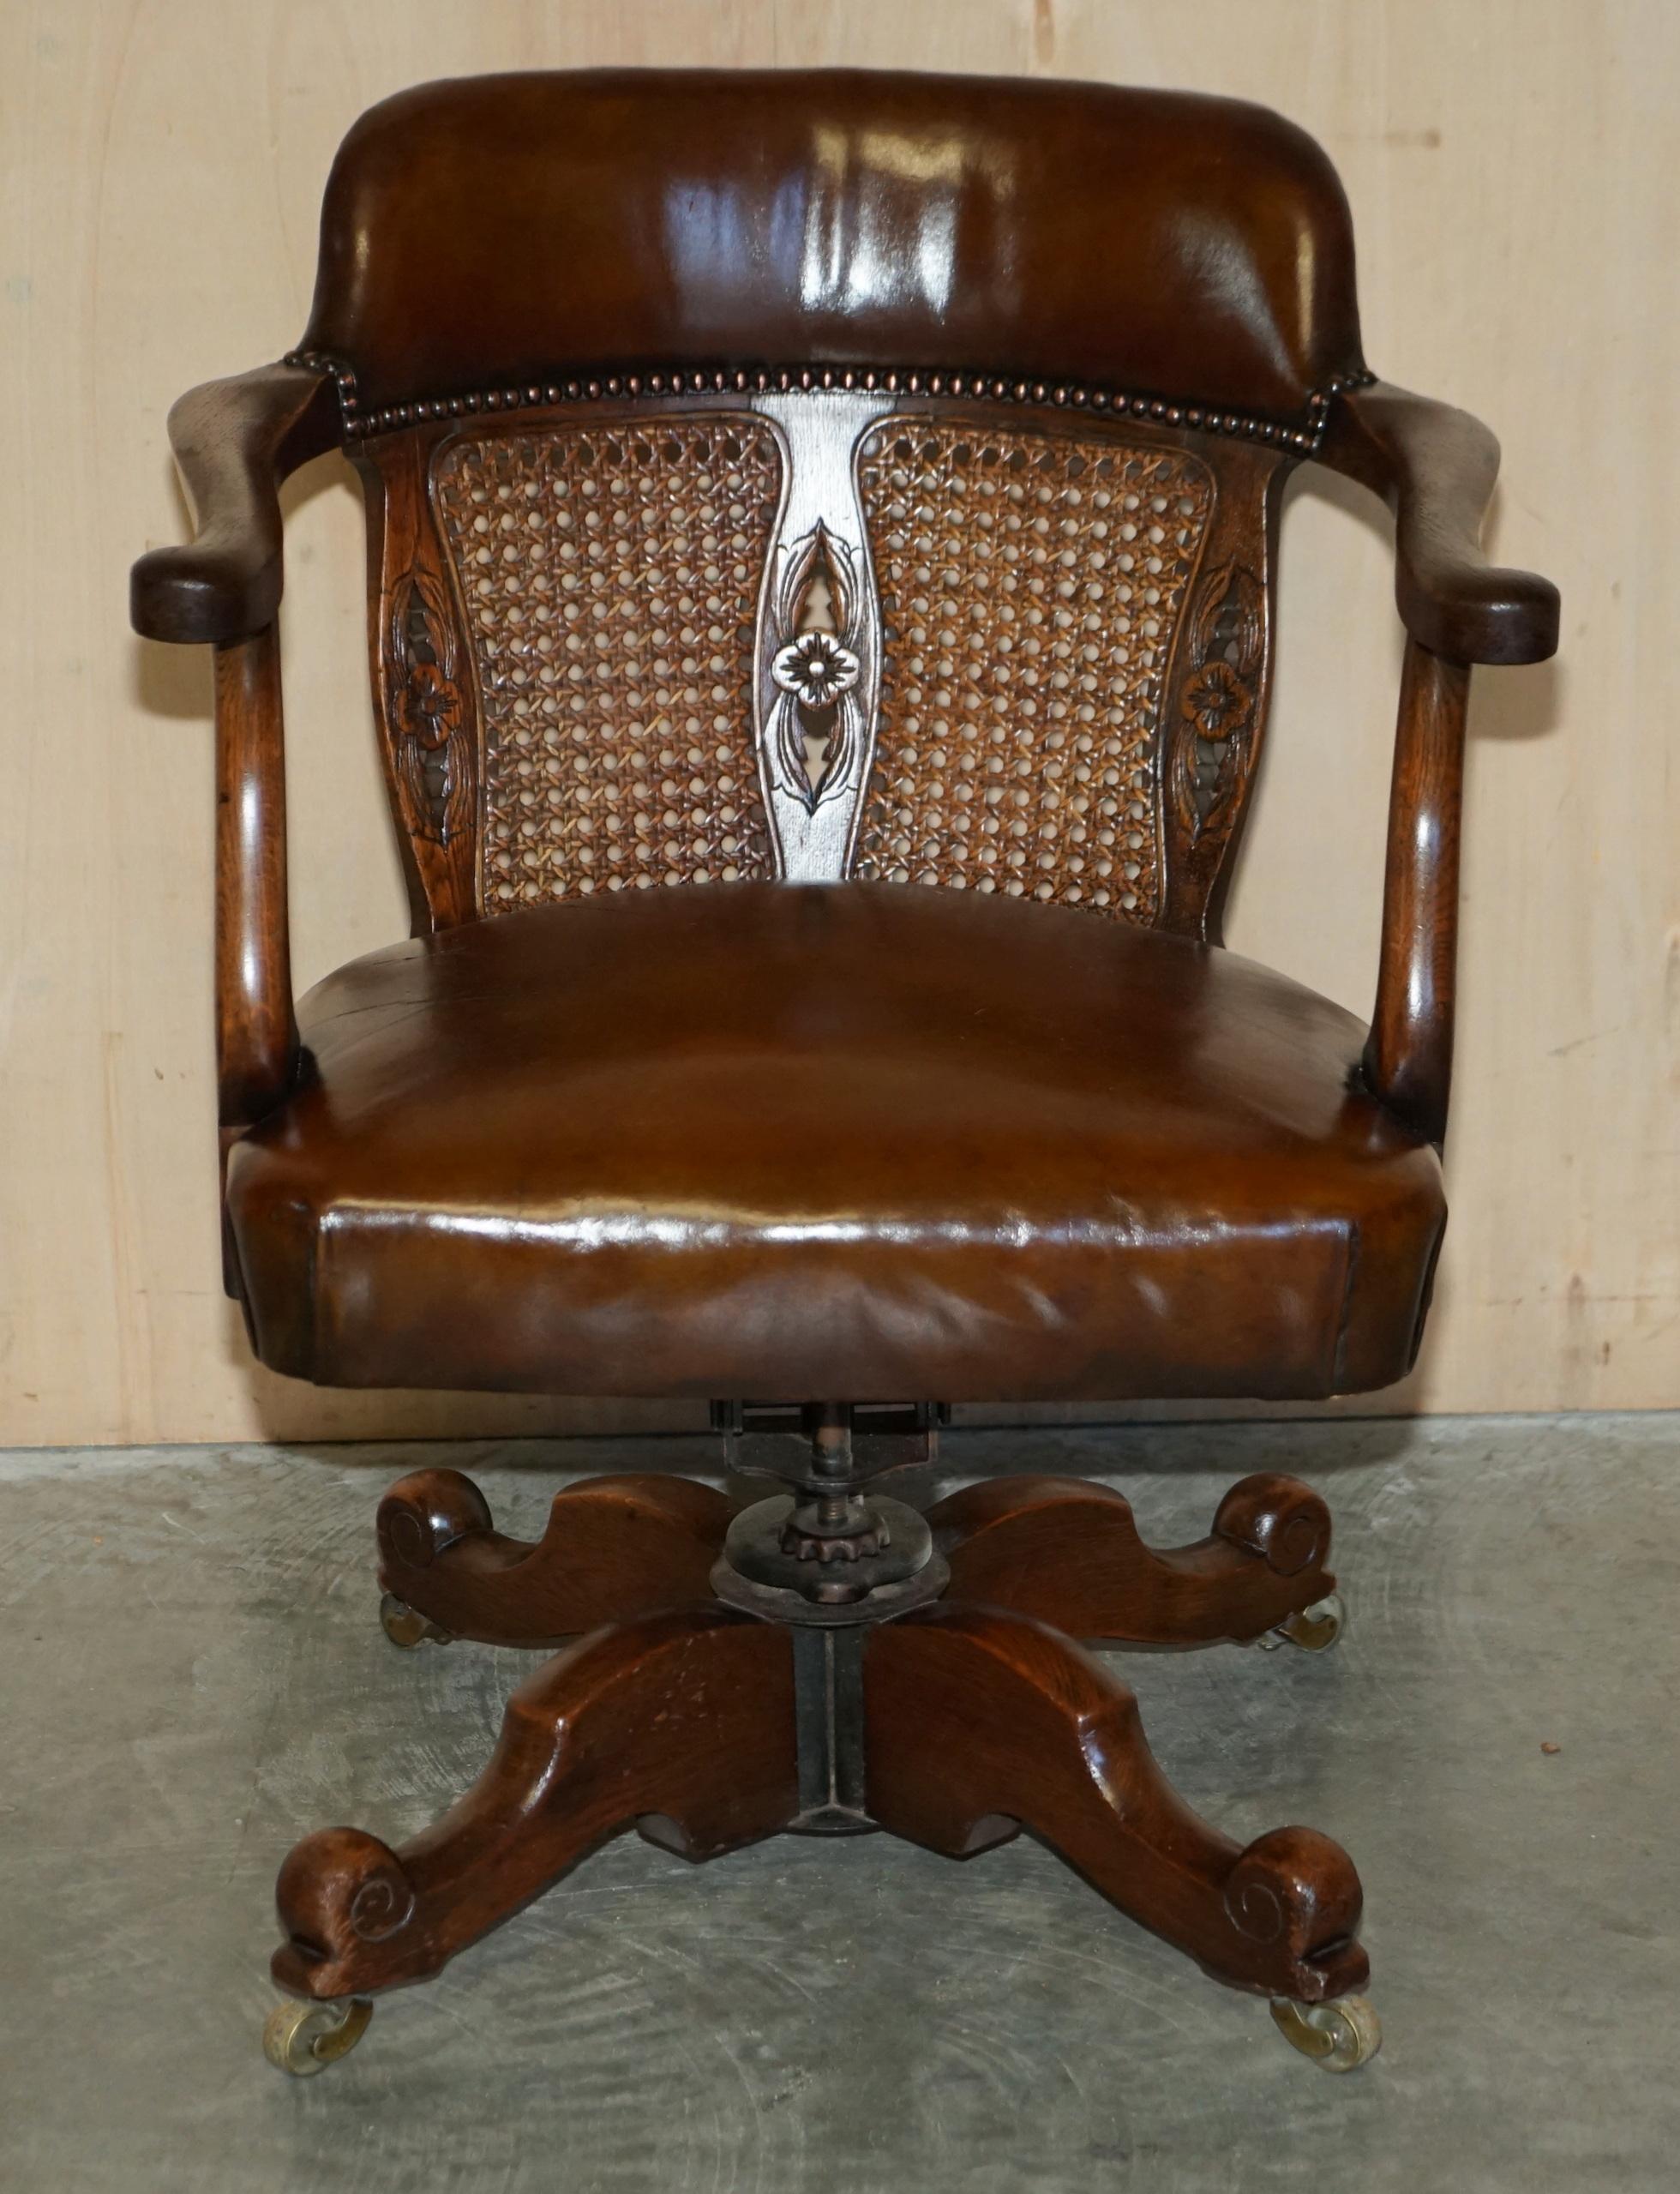 Royal House Antiques

Royal House Antiques freut sich, diesen vollständig restaurierten Bürostuhl aus Bergere und handgefärbtem braunem Leder von circa 1880 mit originalem schmiedeeisernem Drehwerk auf einem englischen Eichensockel zum Verkauf